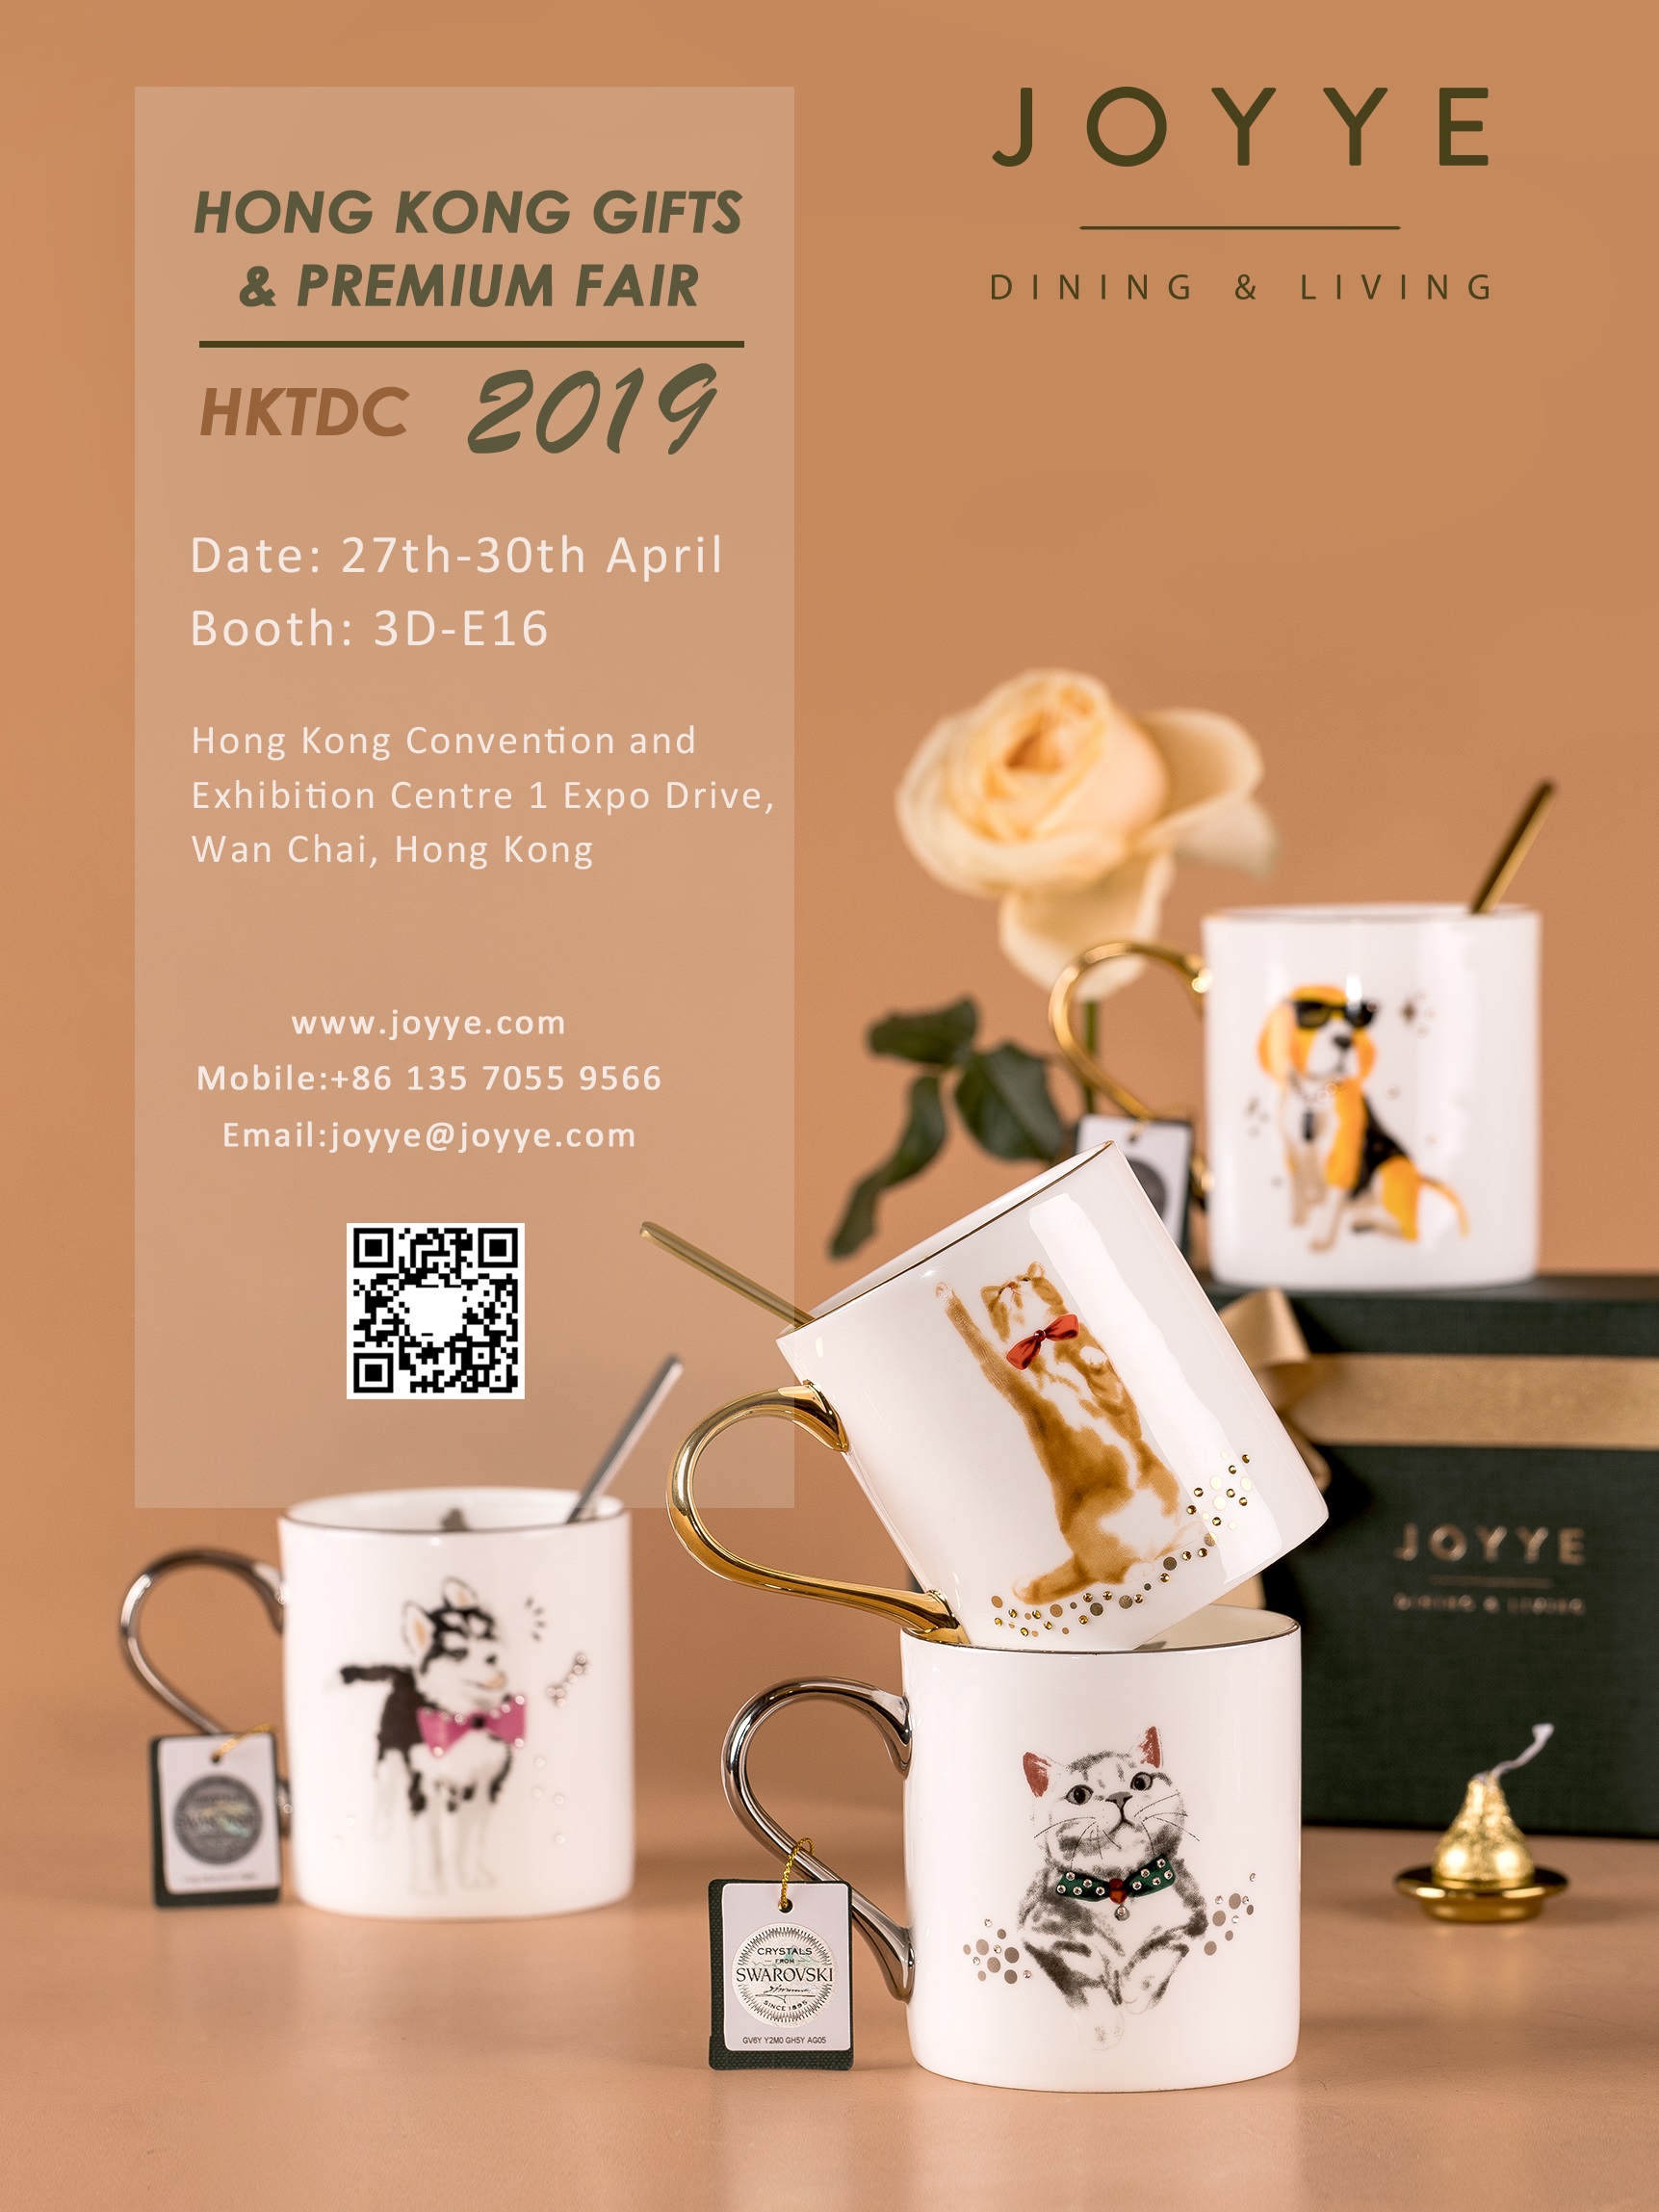 Joyye HKTDC Hong Kong Gifts & Premium Fair 2019